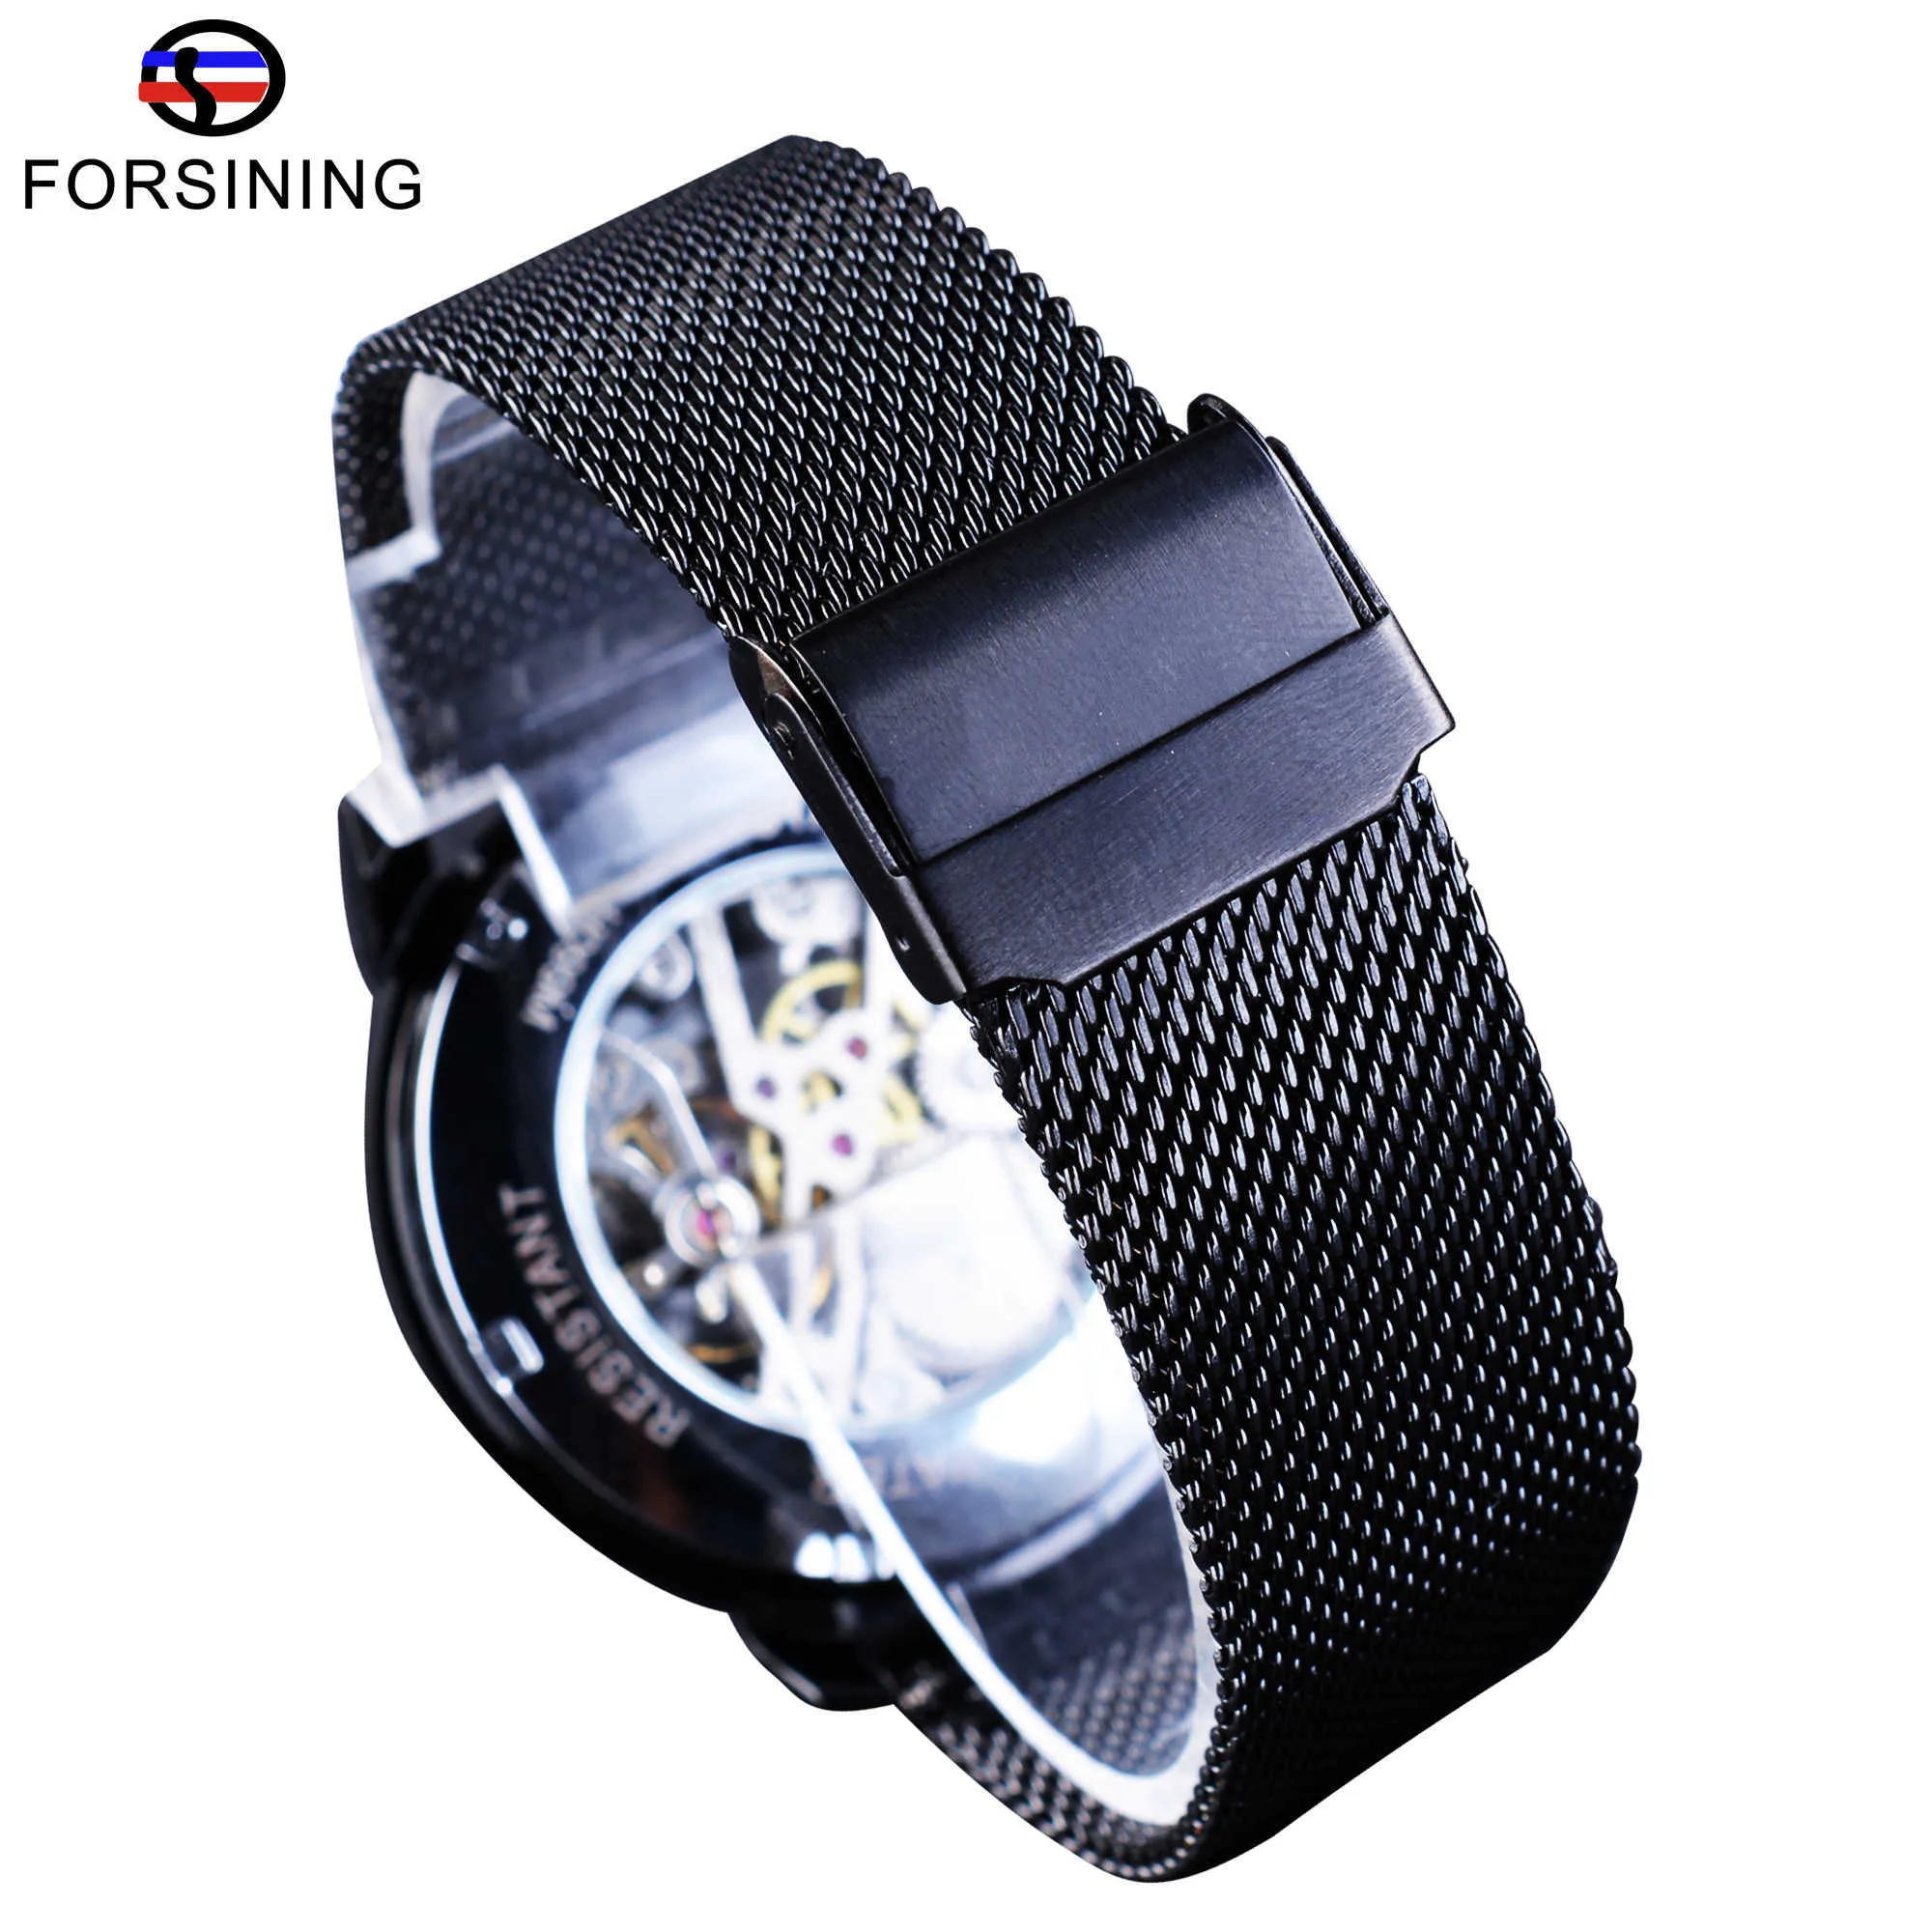 Forsining Retro Mode Design Skeleton Sport Mechanische Uhr Leucht Hände Transparent Mesh Armband Für Männer Top Marke Luxus J328Z